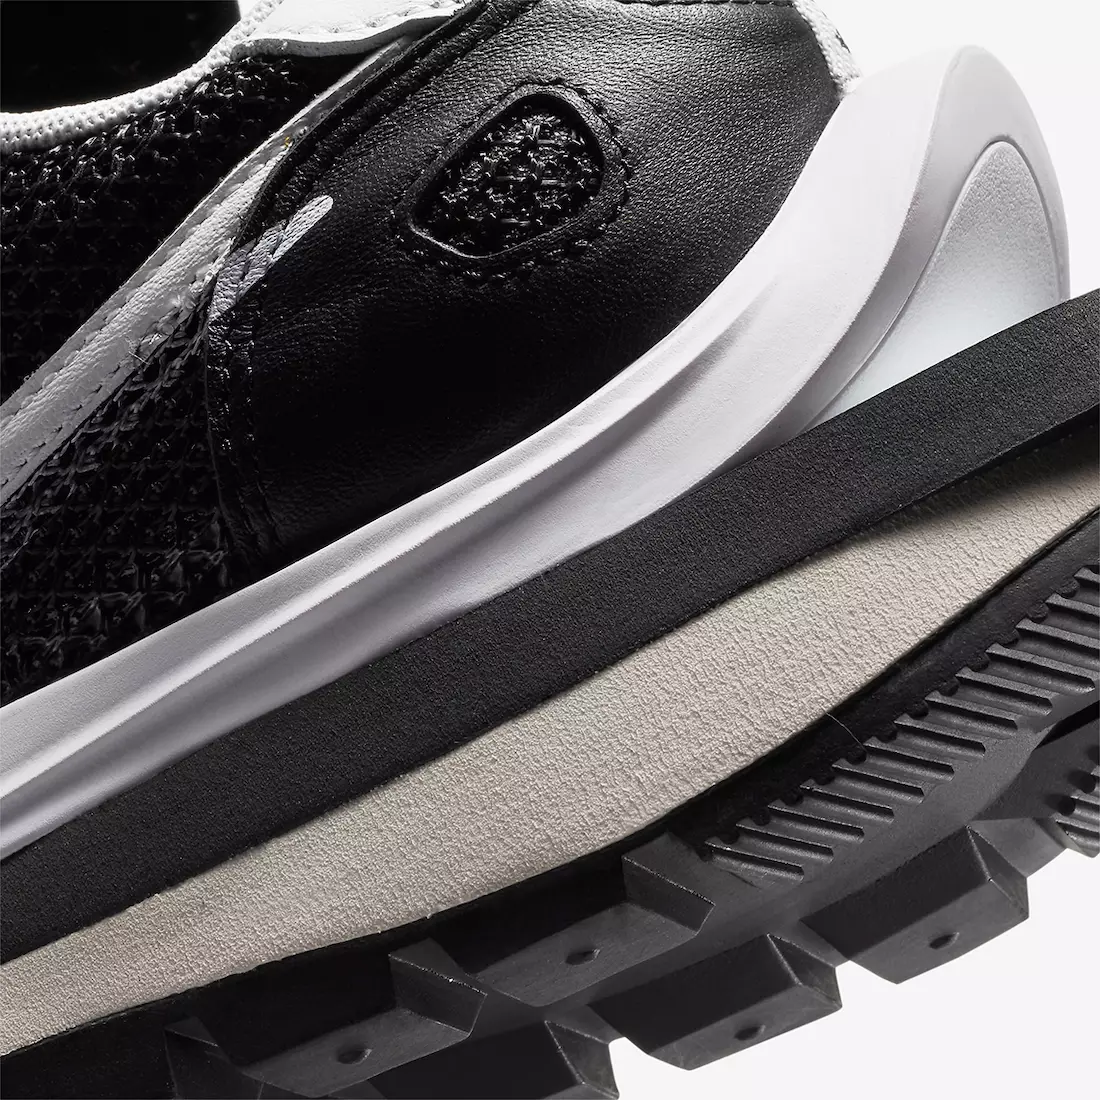 Sacai Nike VaporWaffle Black CV1363-001 Data Lansării